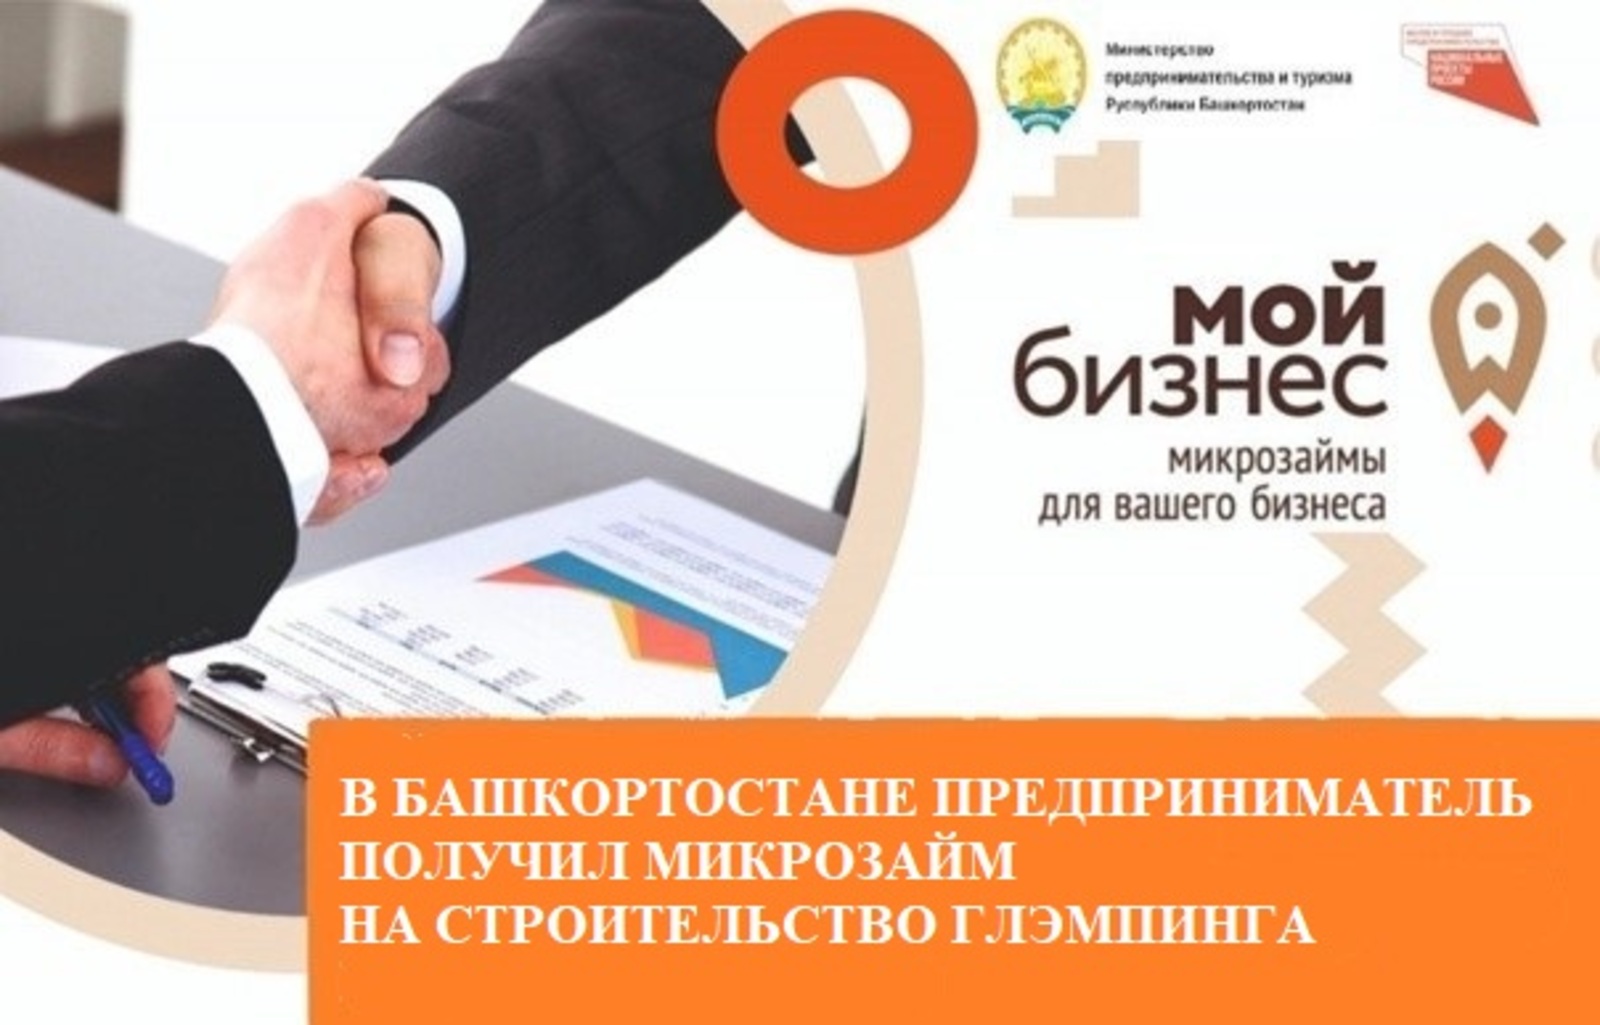 В Башкортостане предприниматель получил микрозайм на строительство глэмпинга